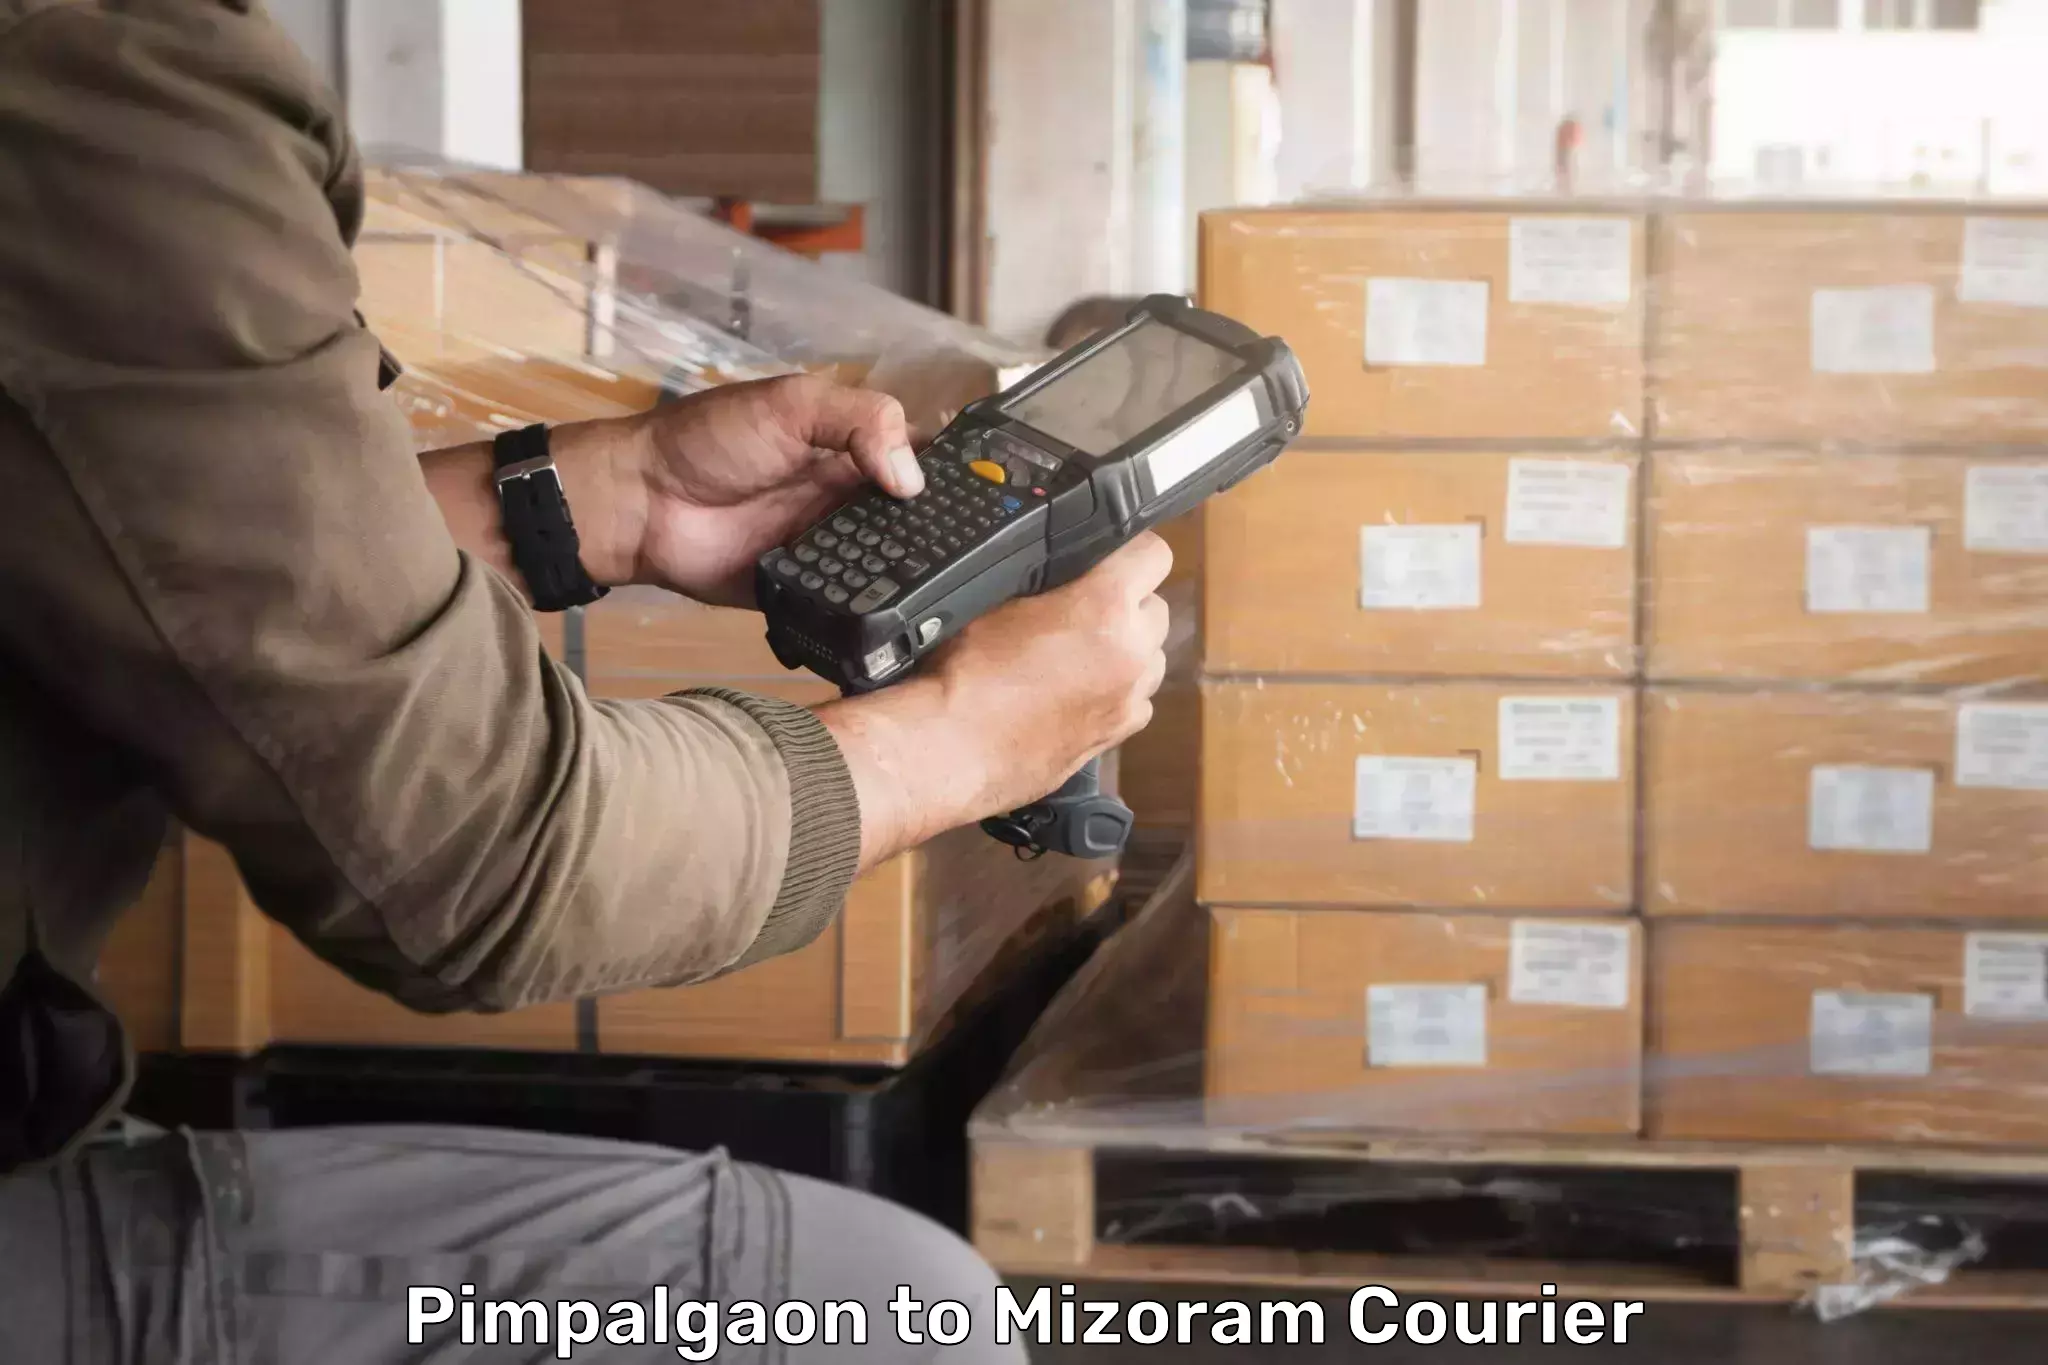 Express logistics providers Pimpalgaon to Darlawn